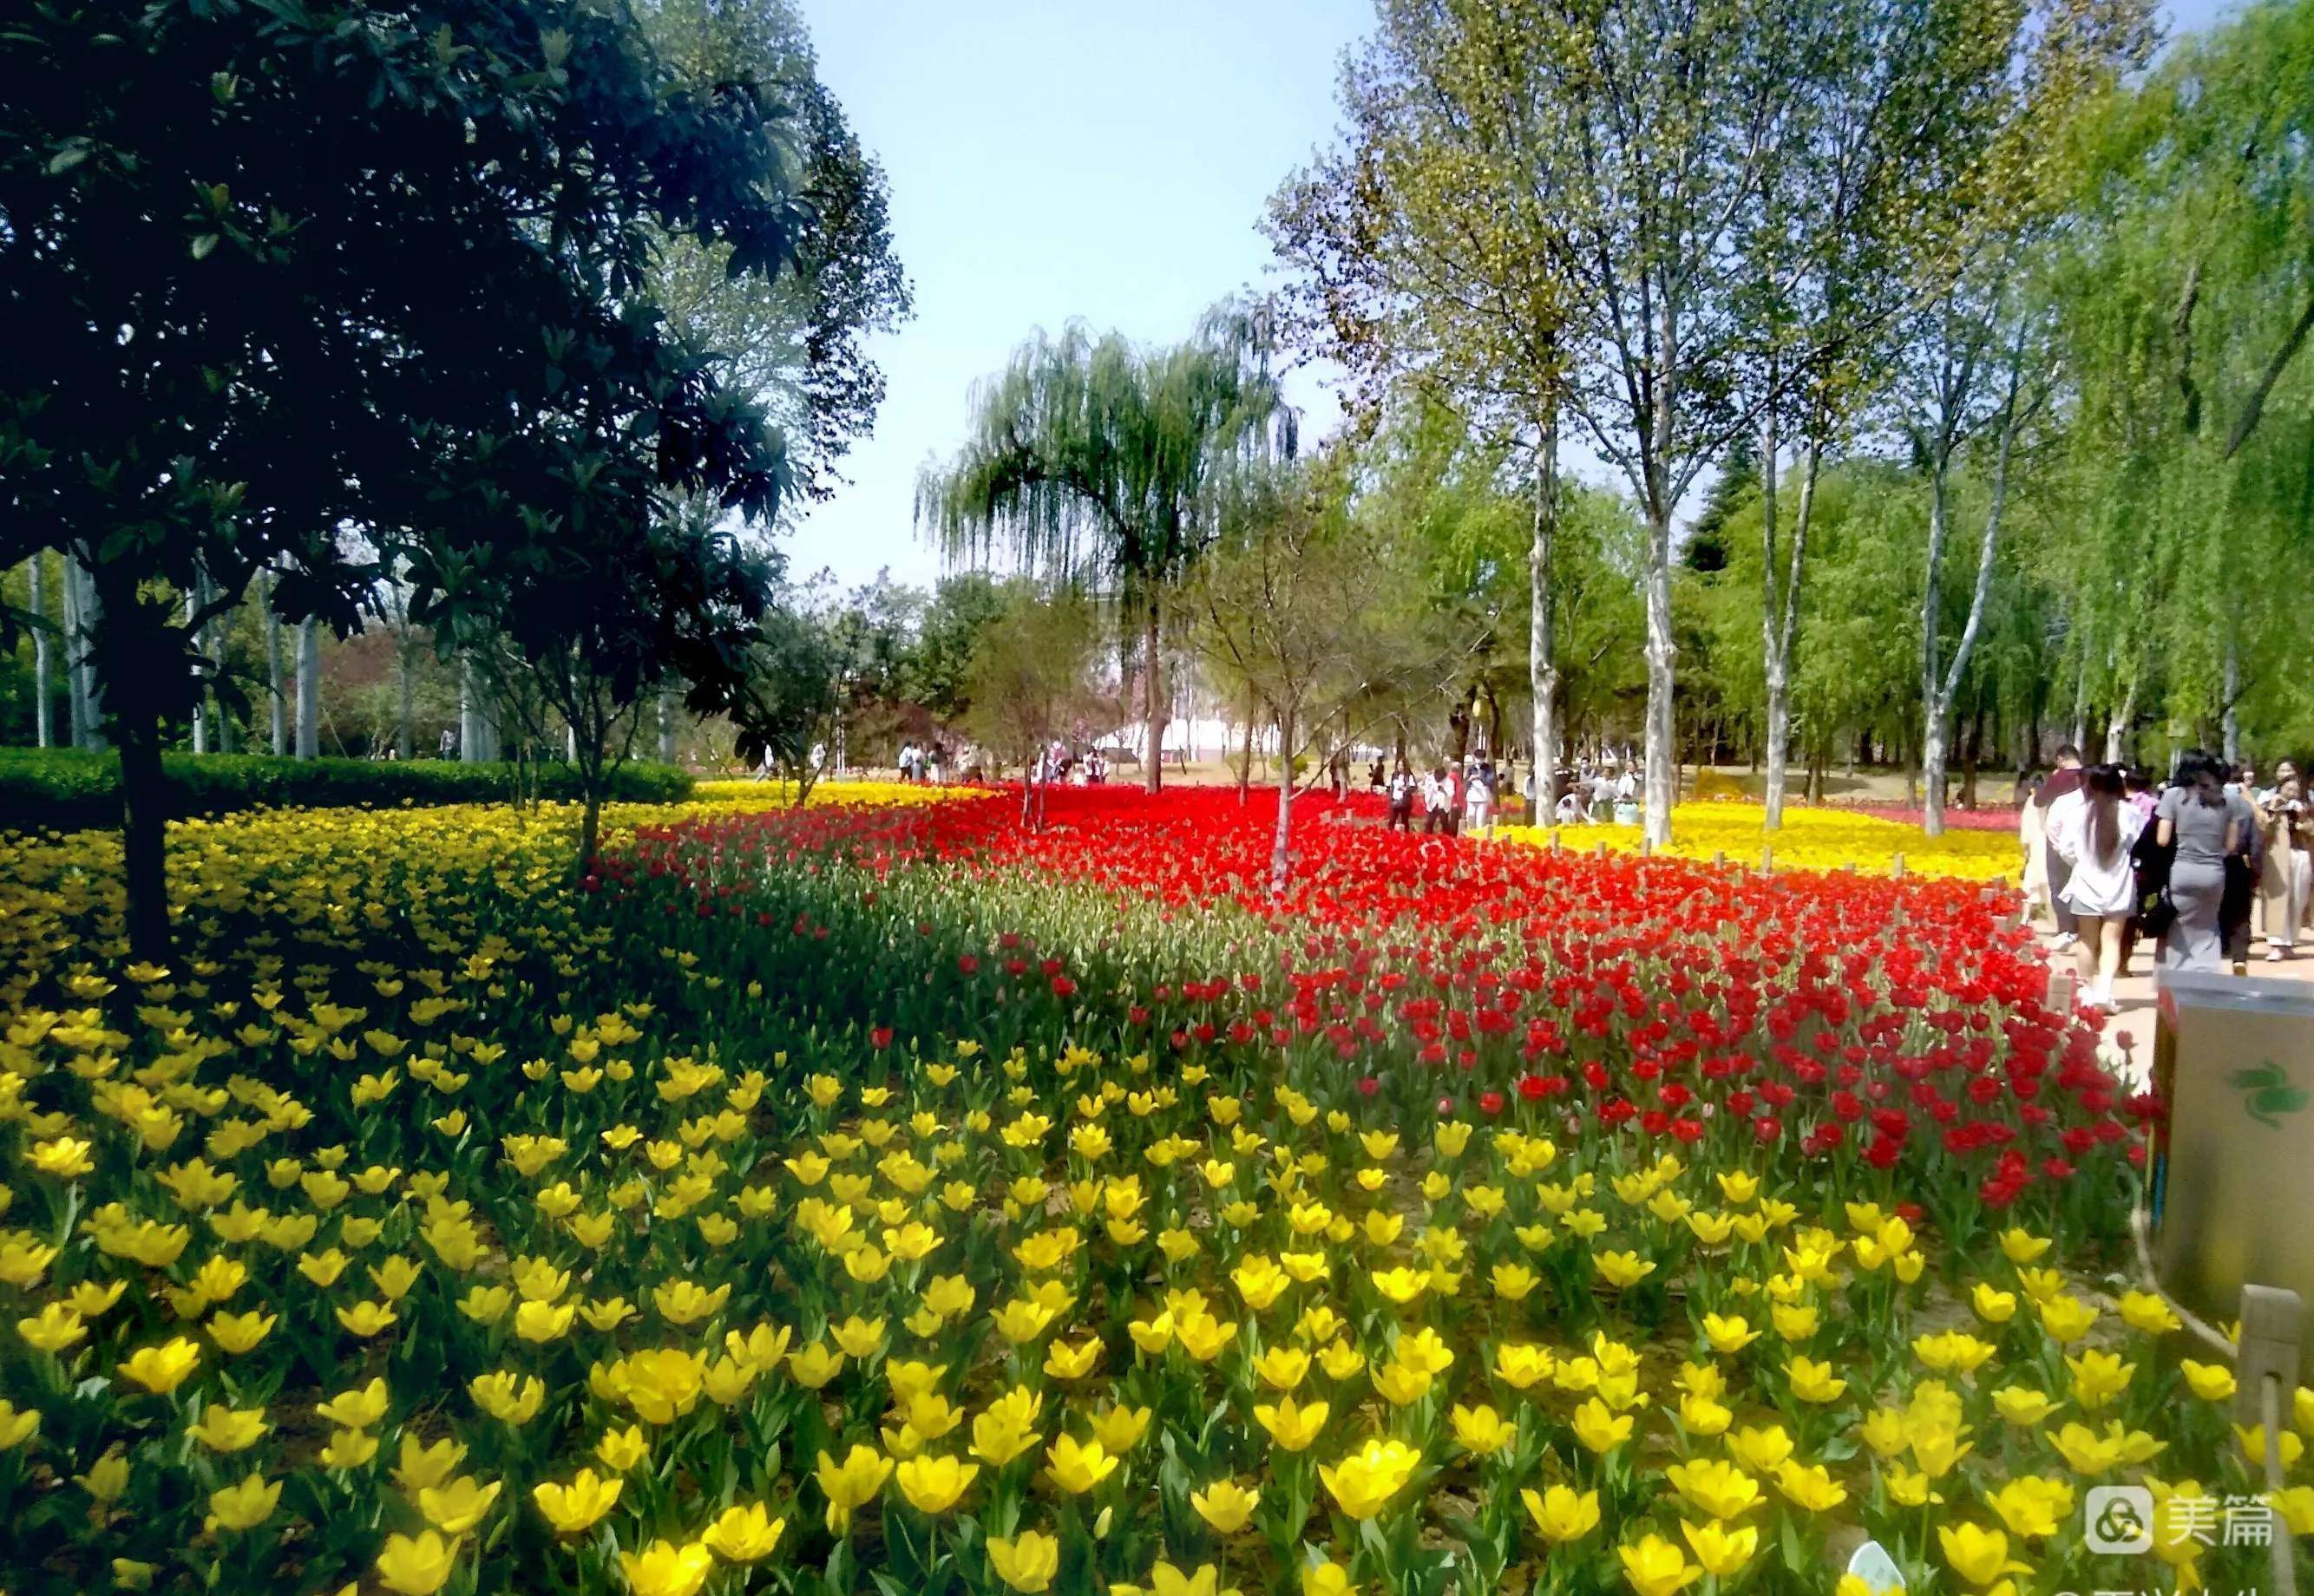 沧州绿博园花卉市场图片